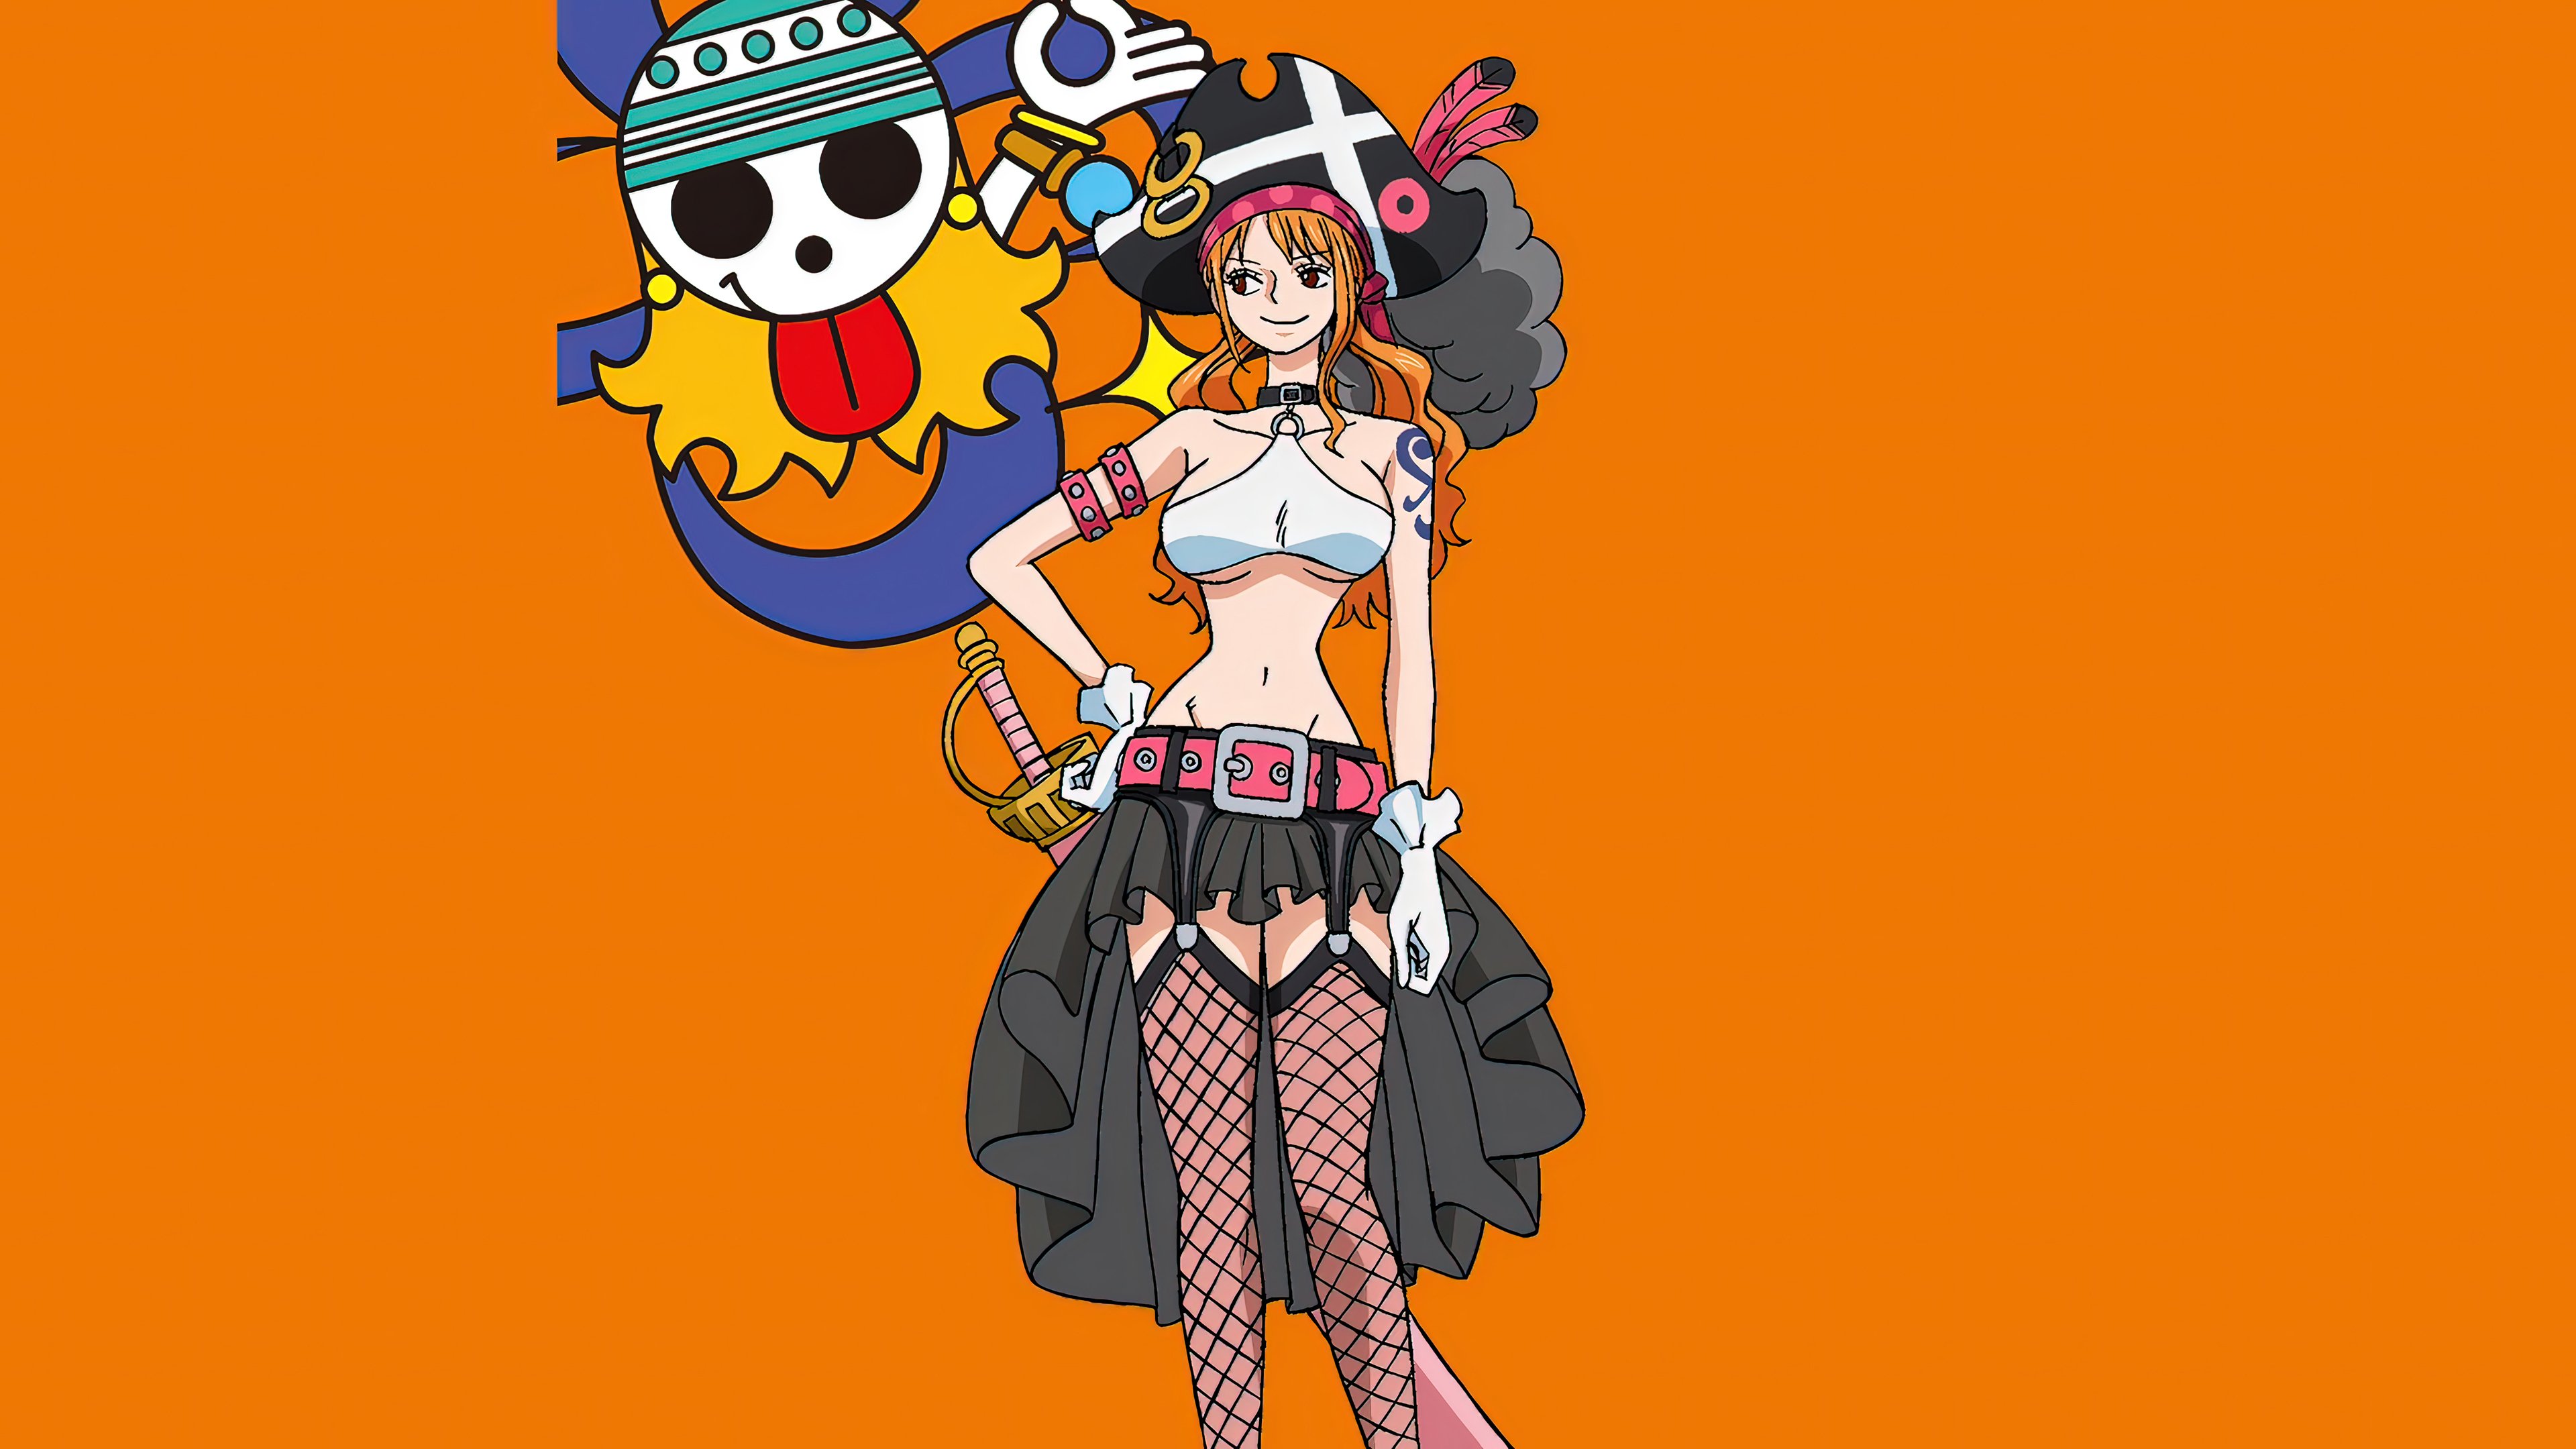 Tải 45 Hình Nền Điện Thoại One Piece Miễn Phí  Chất Lượng 4K